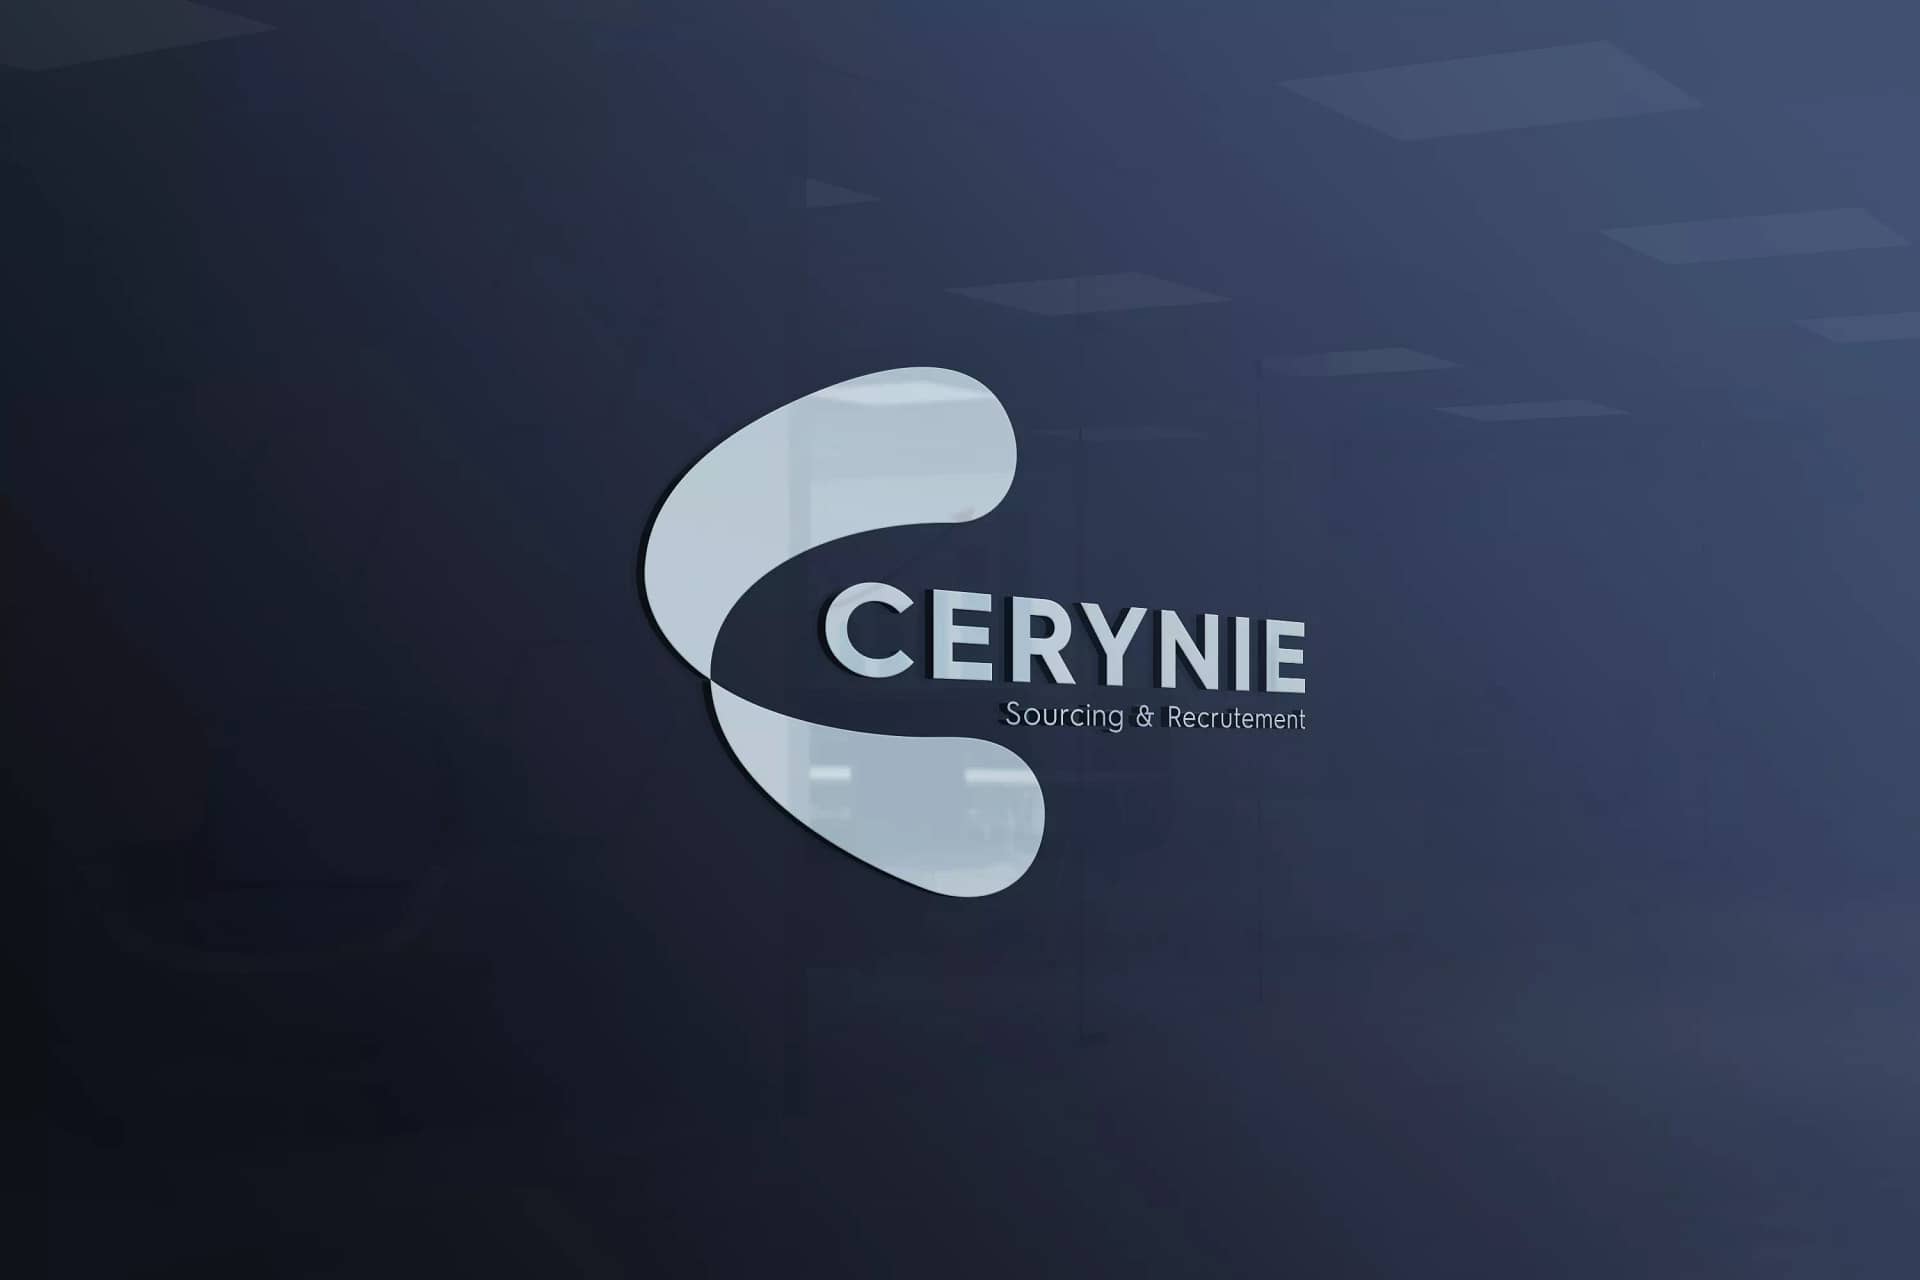 Carynie-logo